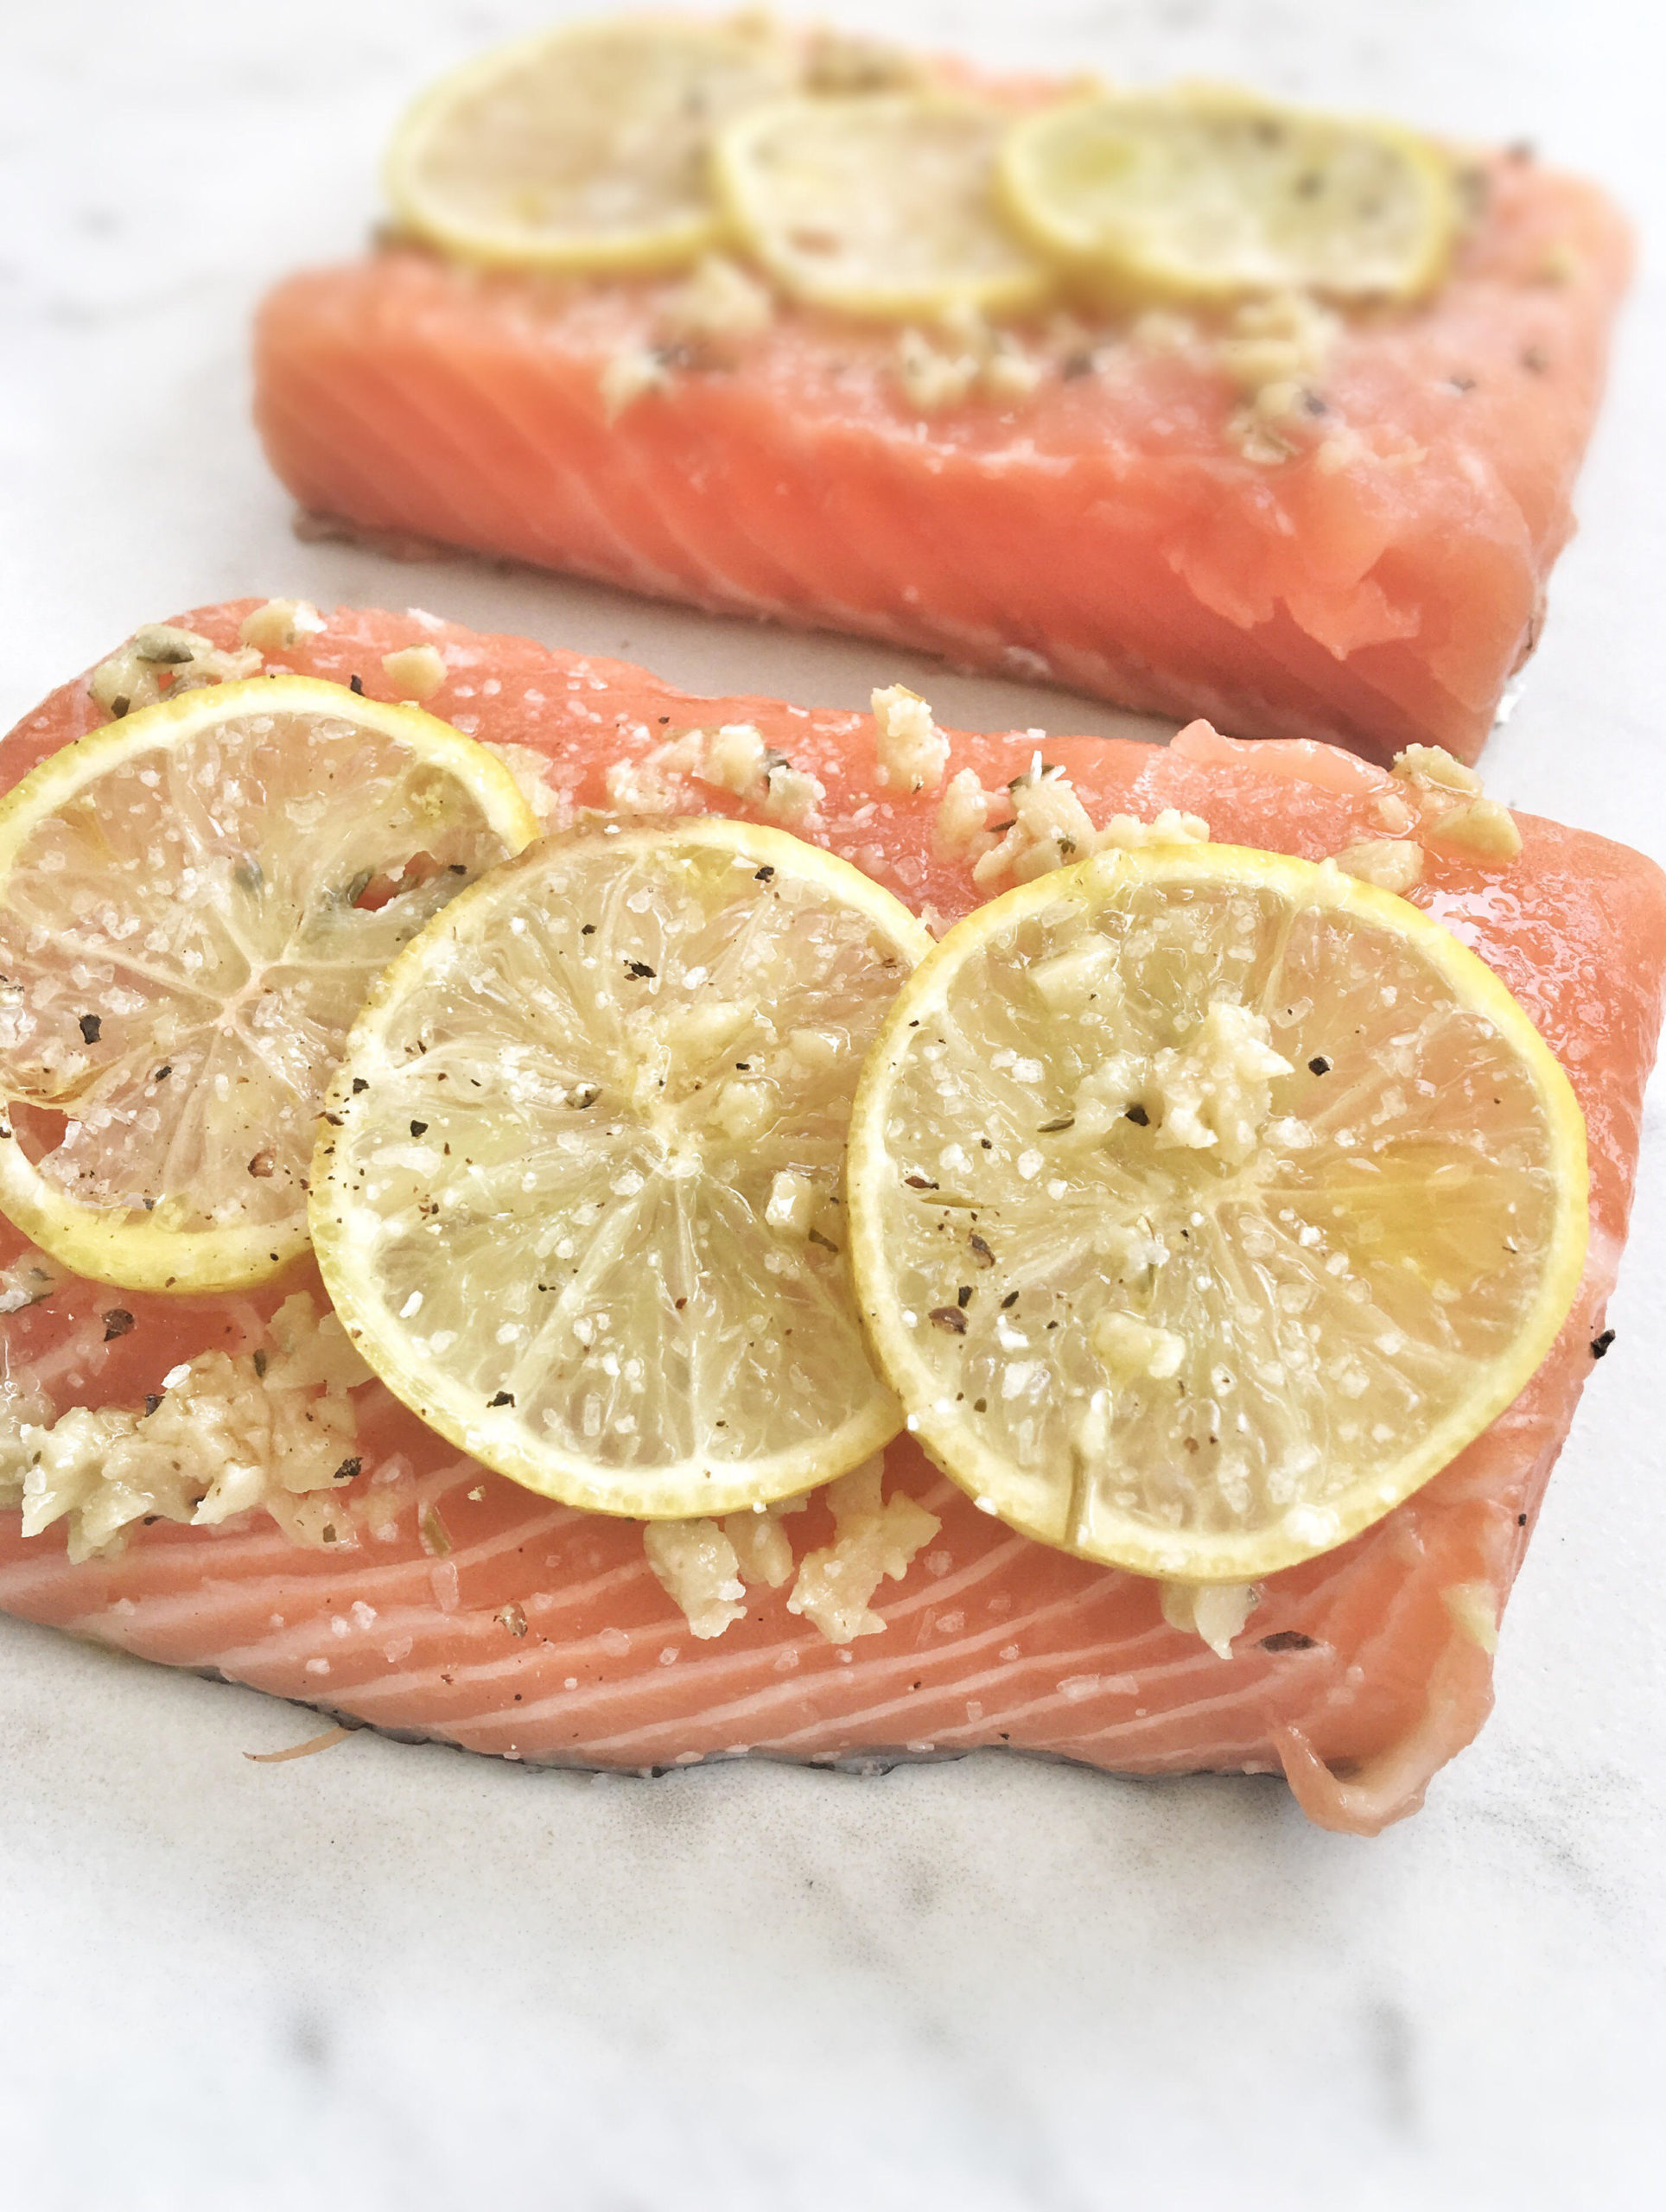 garlic-lemon salmon